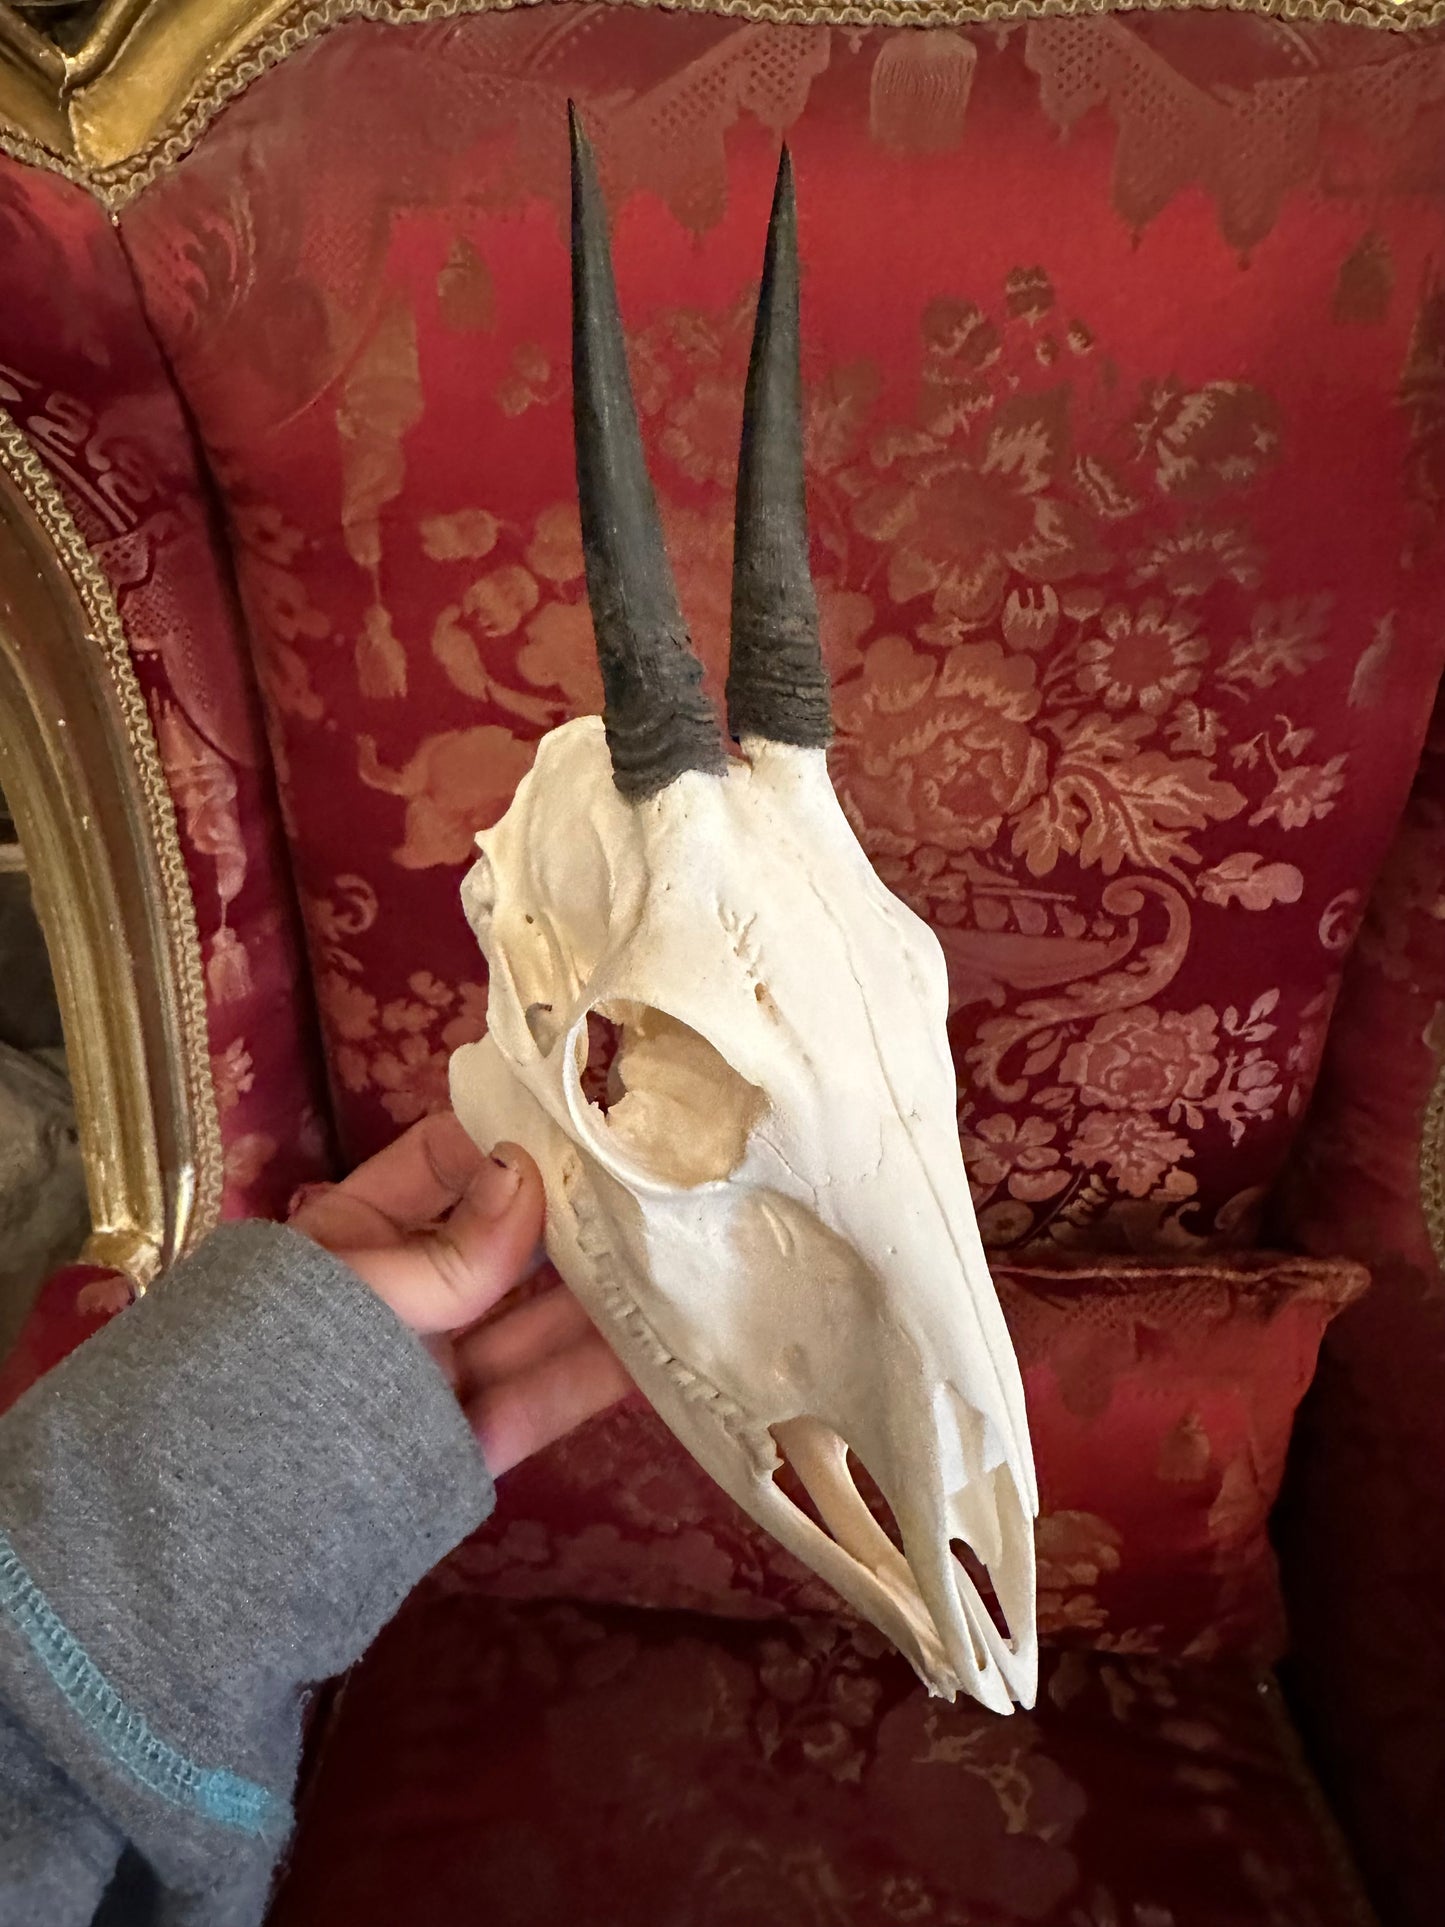 Duiker skull complete